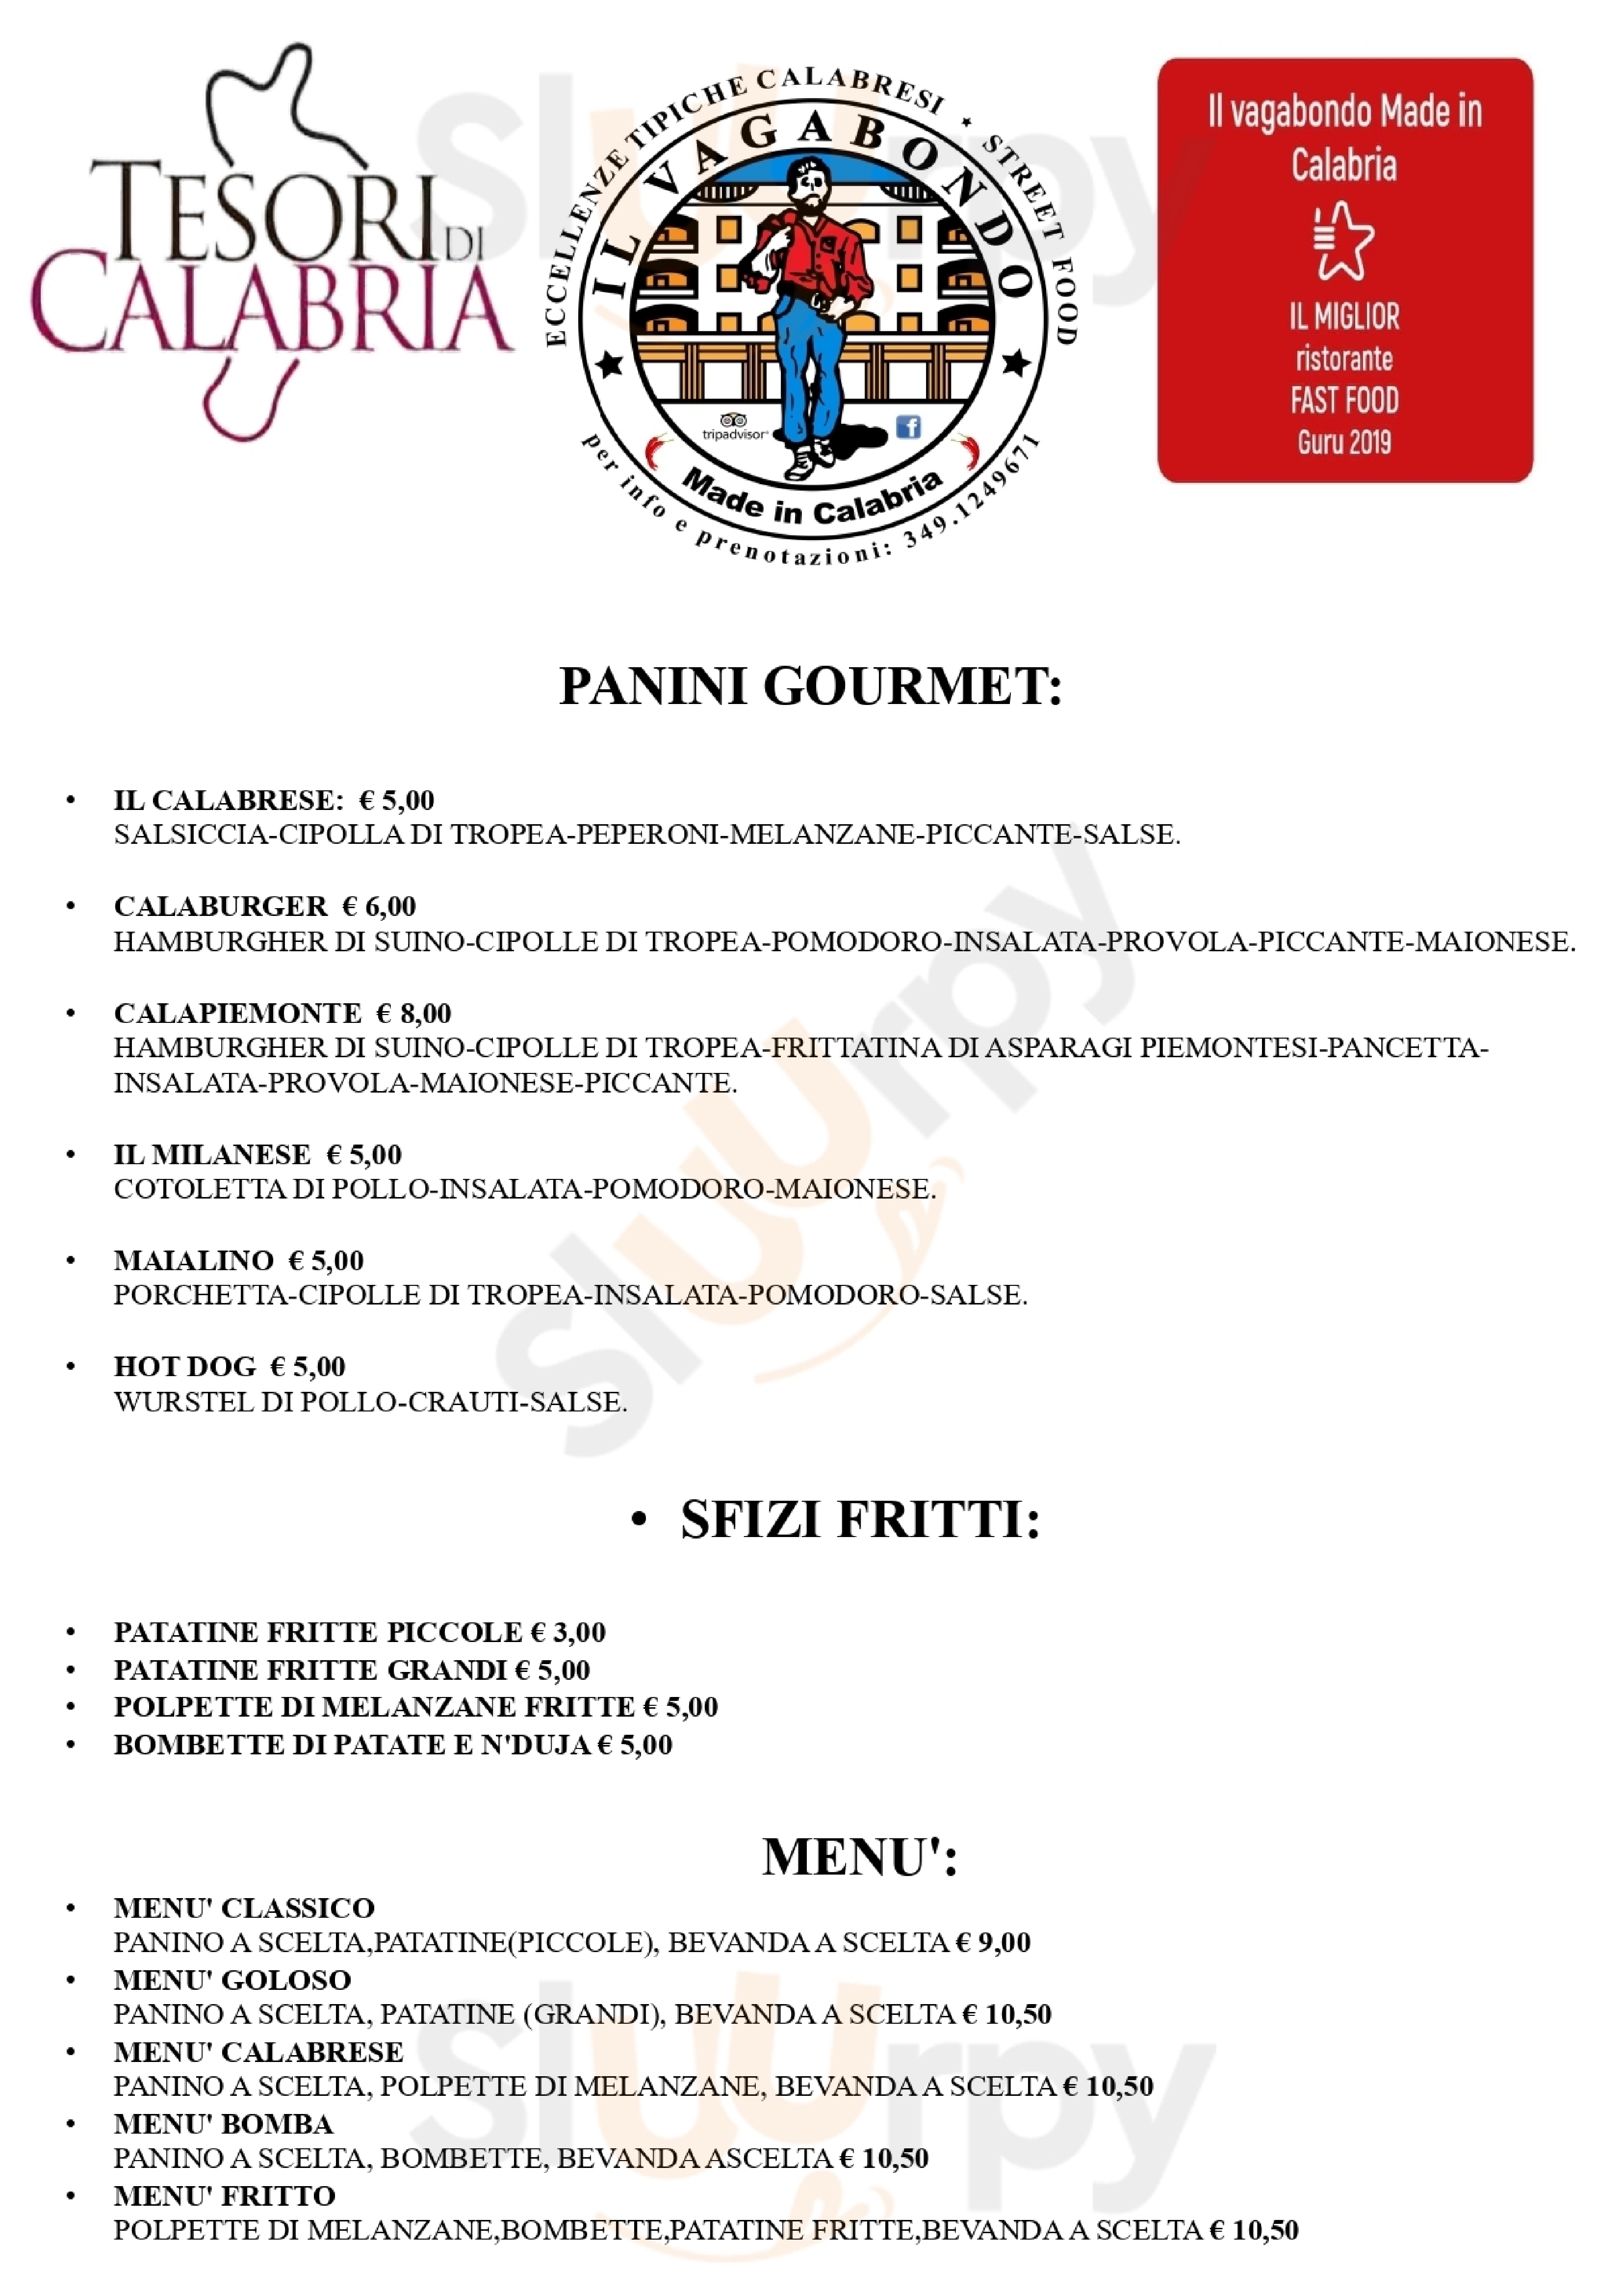 Il Vagabondo Made in Calabria Pinerolo menù 1 pagina